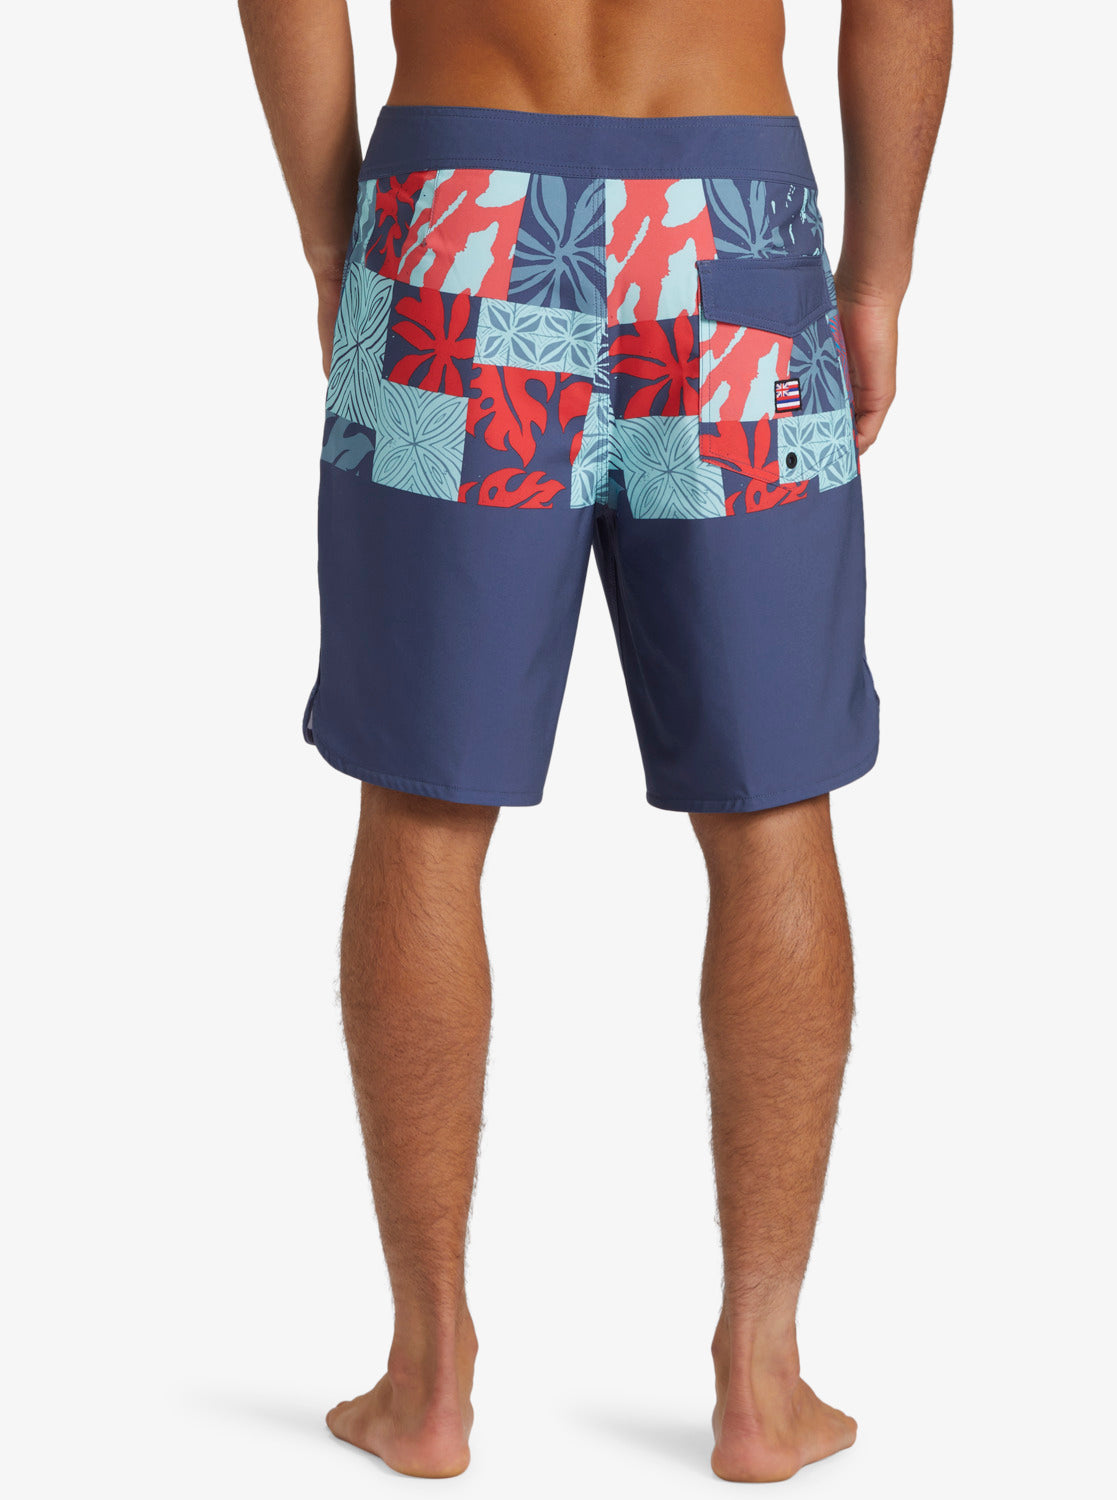 値引きする Goodfellow 68&brothers Men Bi-Color Co Surf Shorts & メンズ